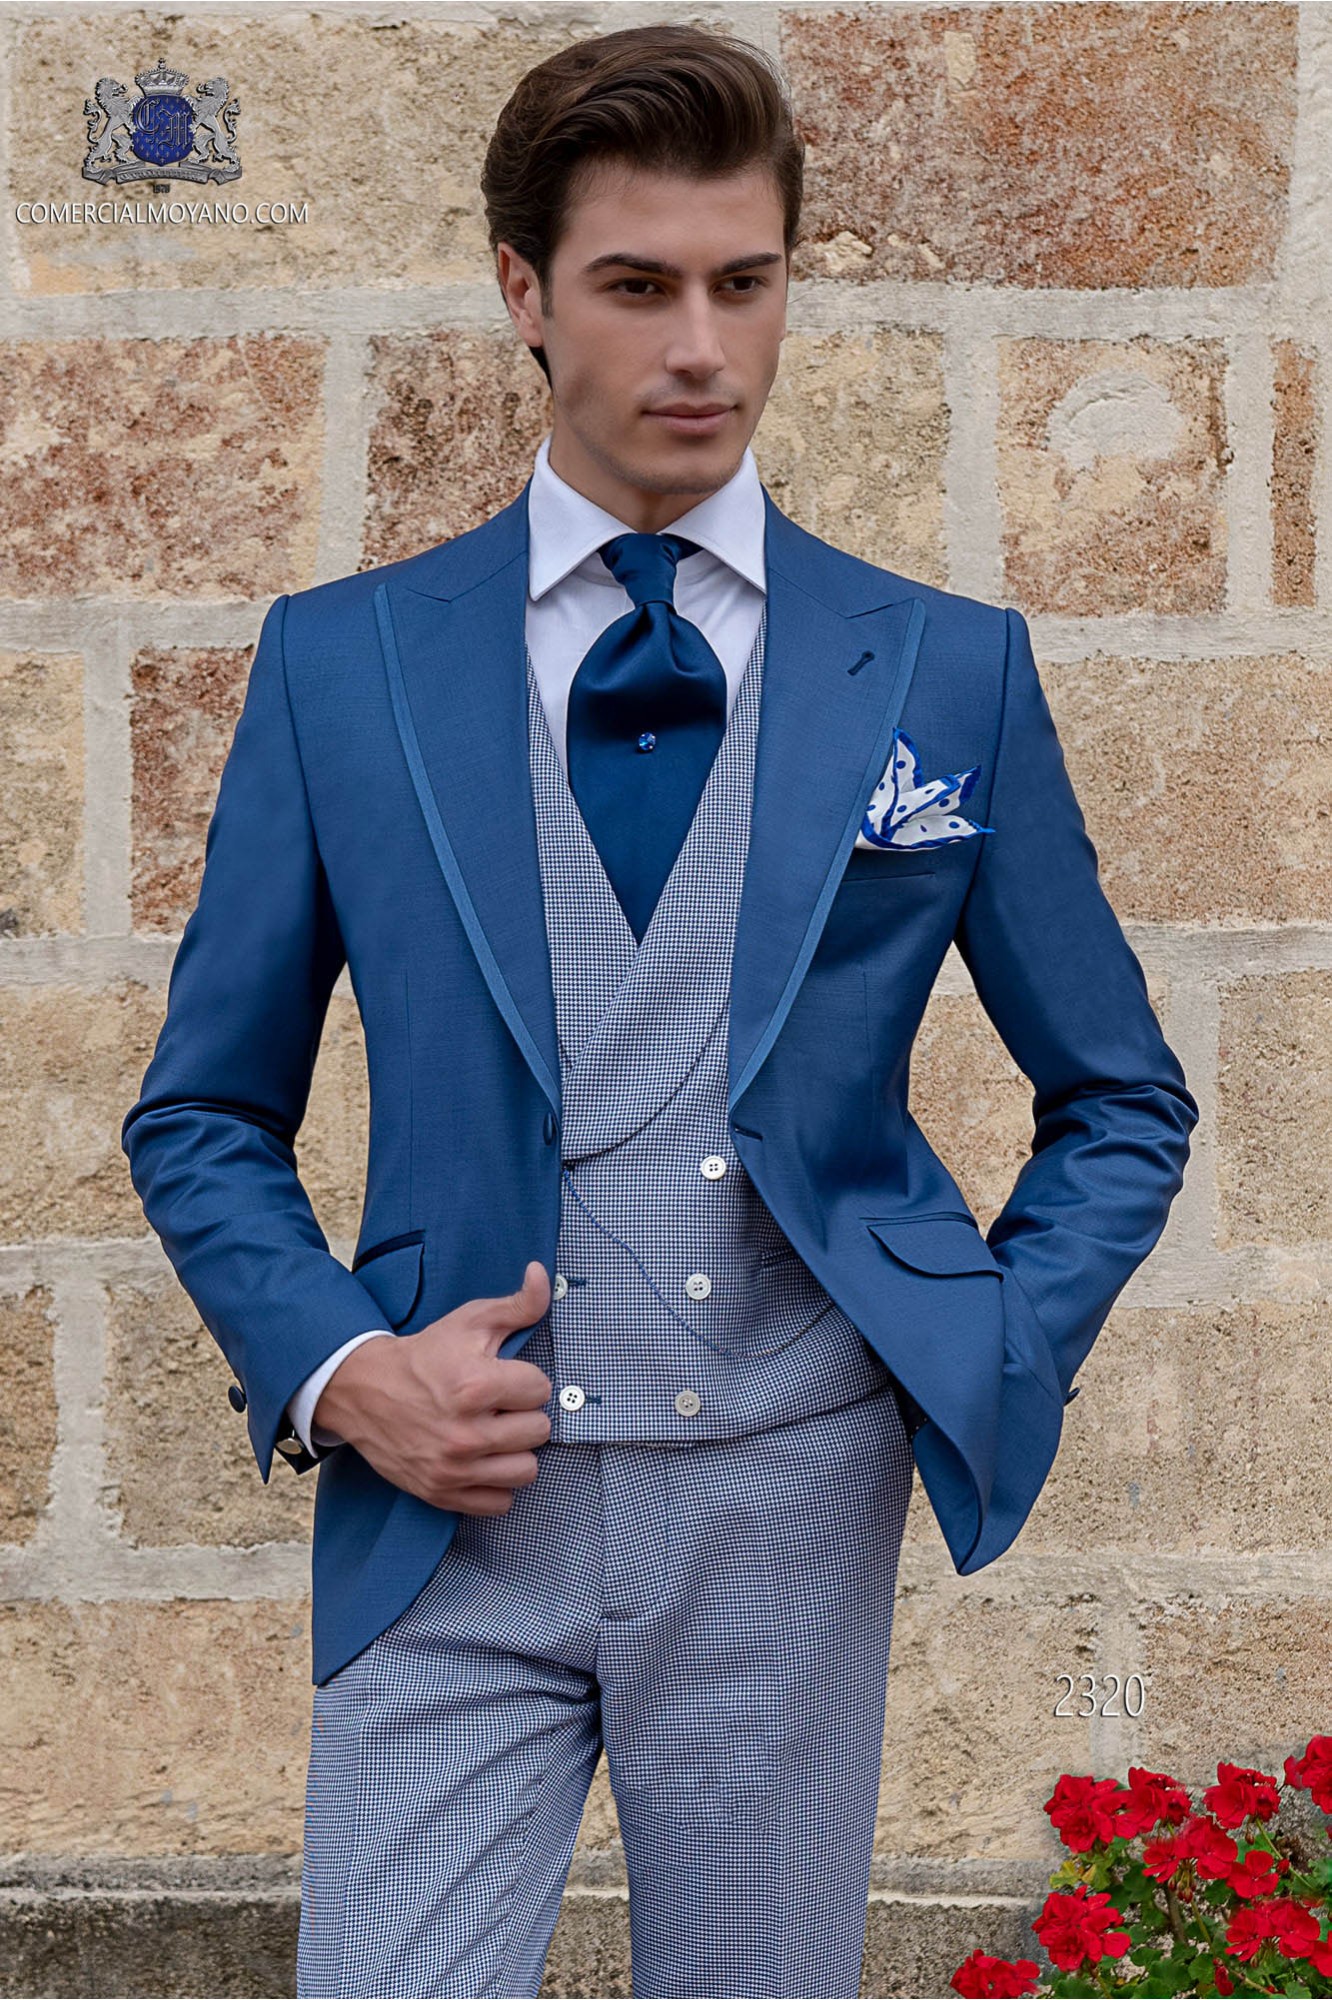 Traje de novio azul royal con pantalón pata de gallo azul modelo: 2320 Mario Moyano colección Gentleman